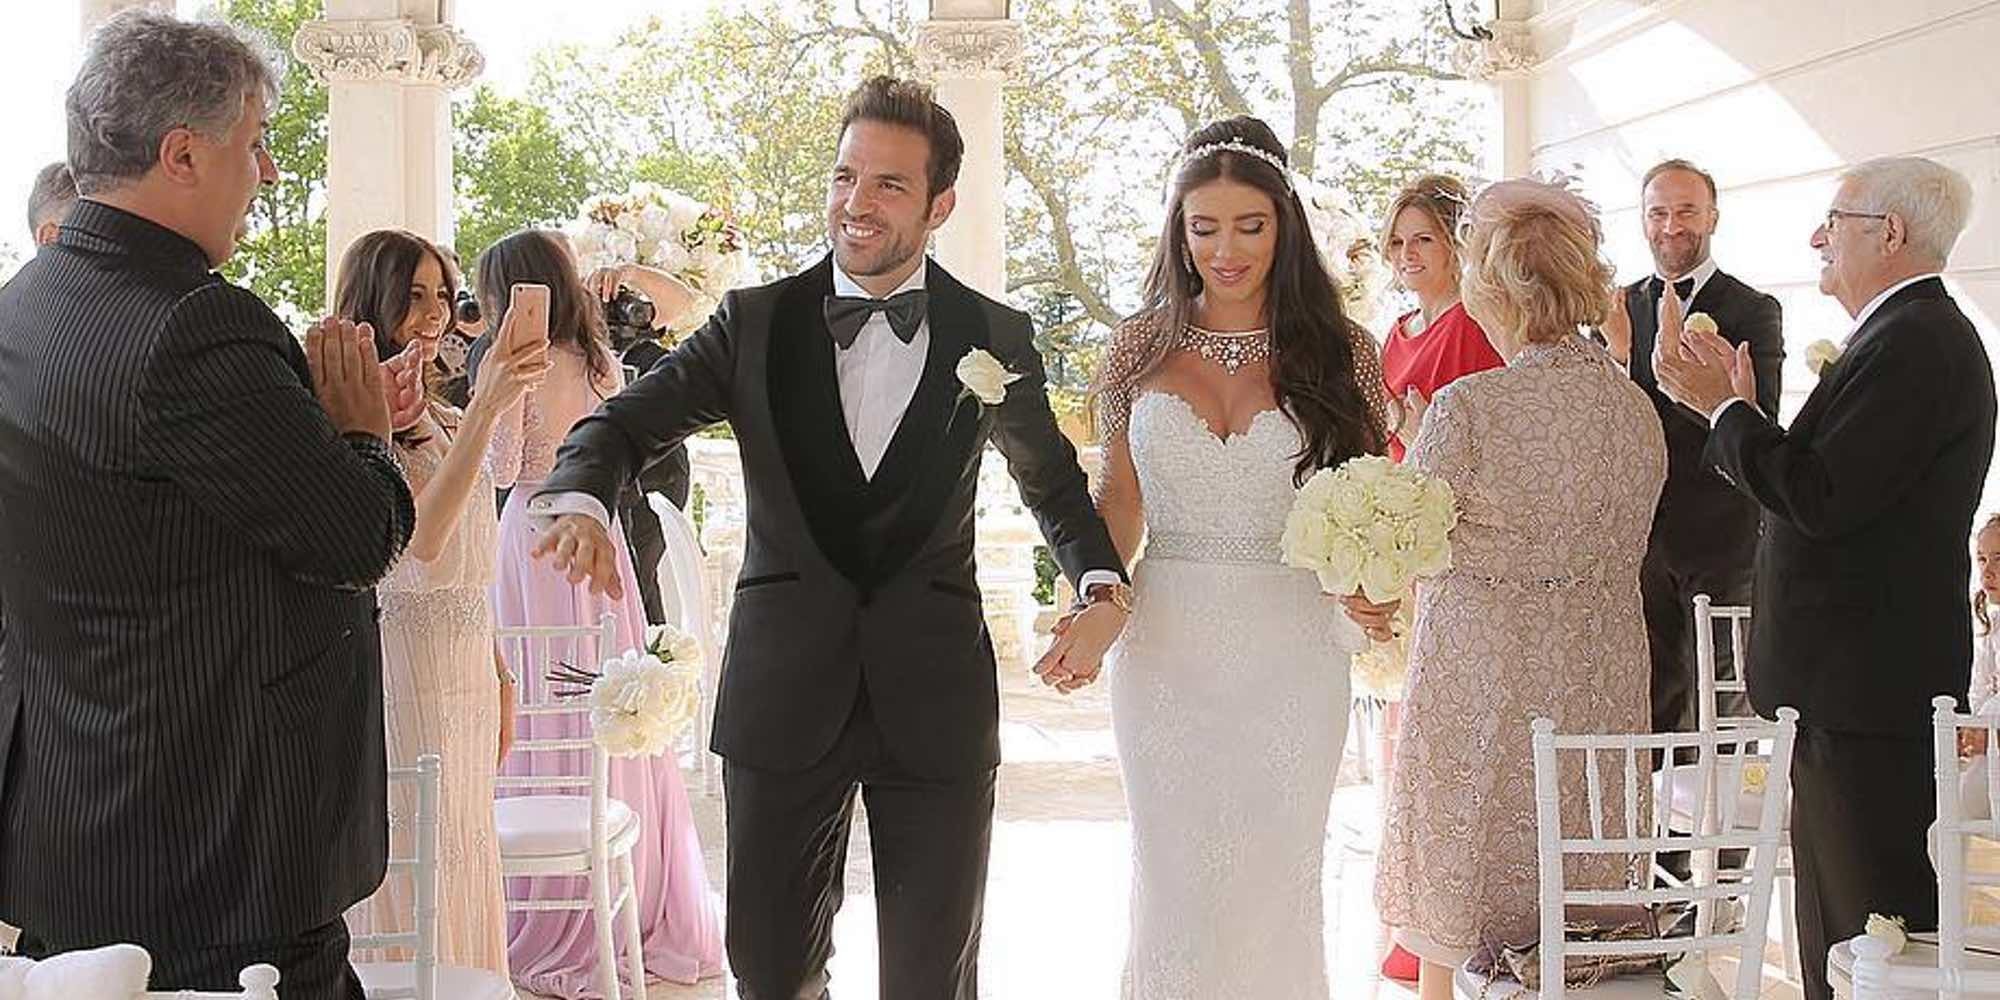 Cesc Fábregas y Daniella Semaan se casan en una romántica e íntima boda